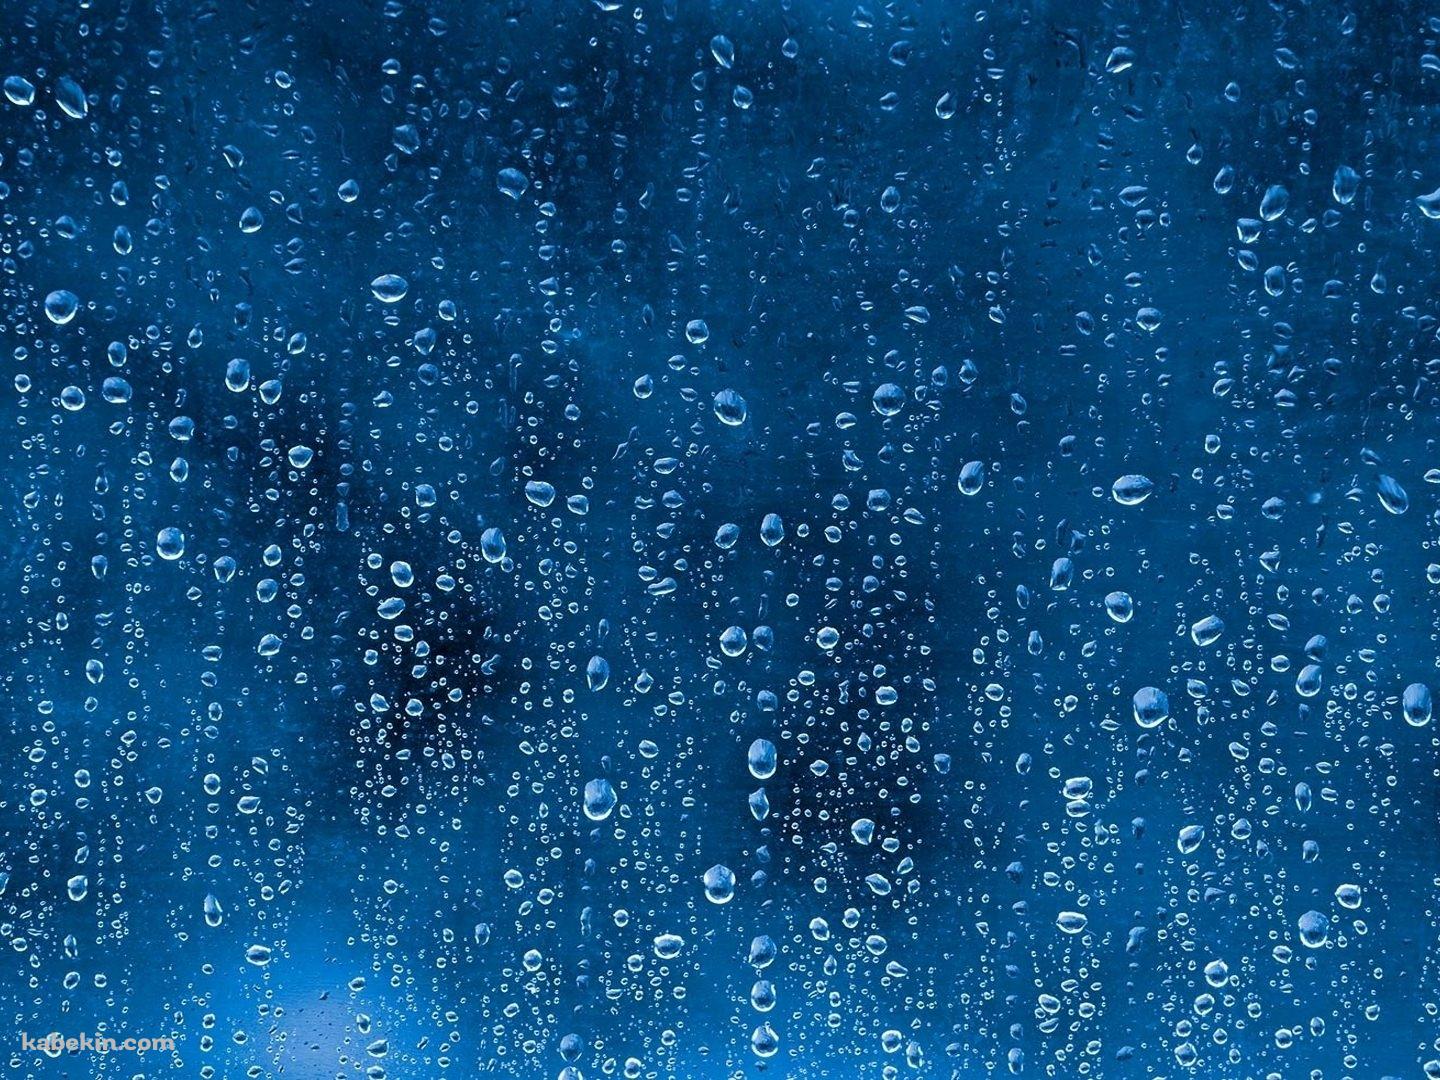 嵐の後の雨の水滴の壁紙(1440px x 1080px) 高画質 PC・デスクトップ用